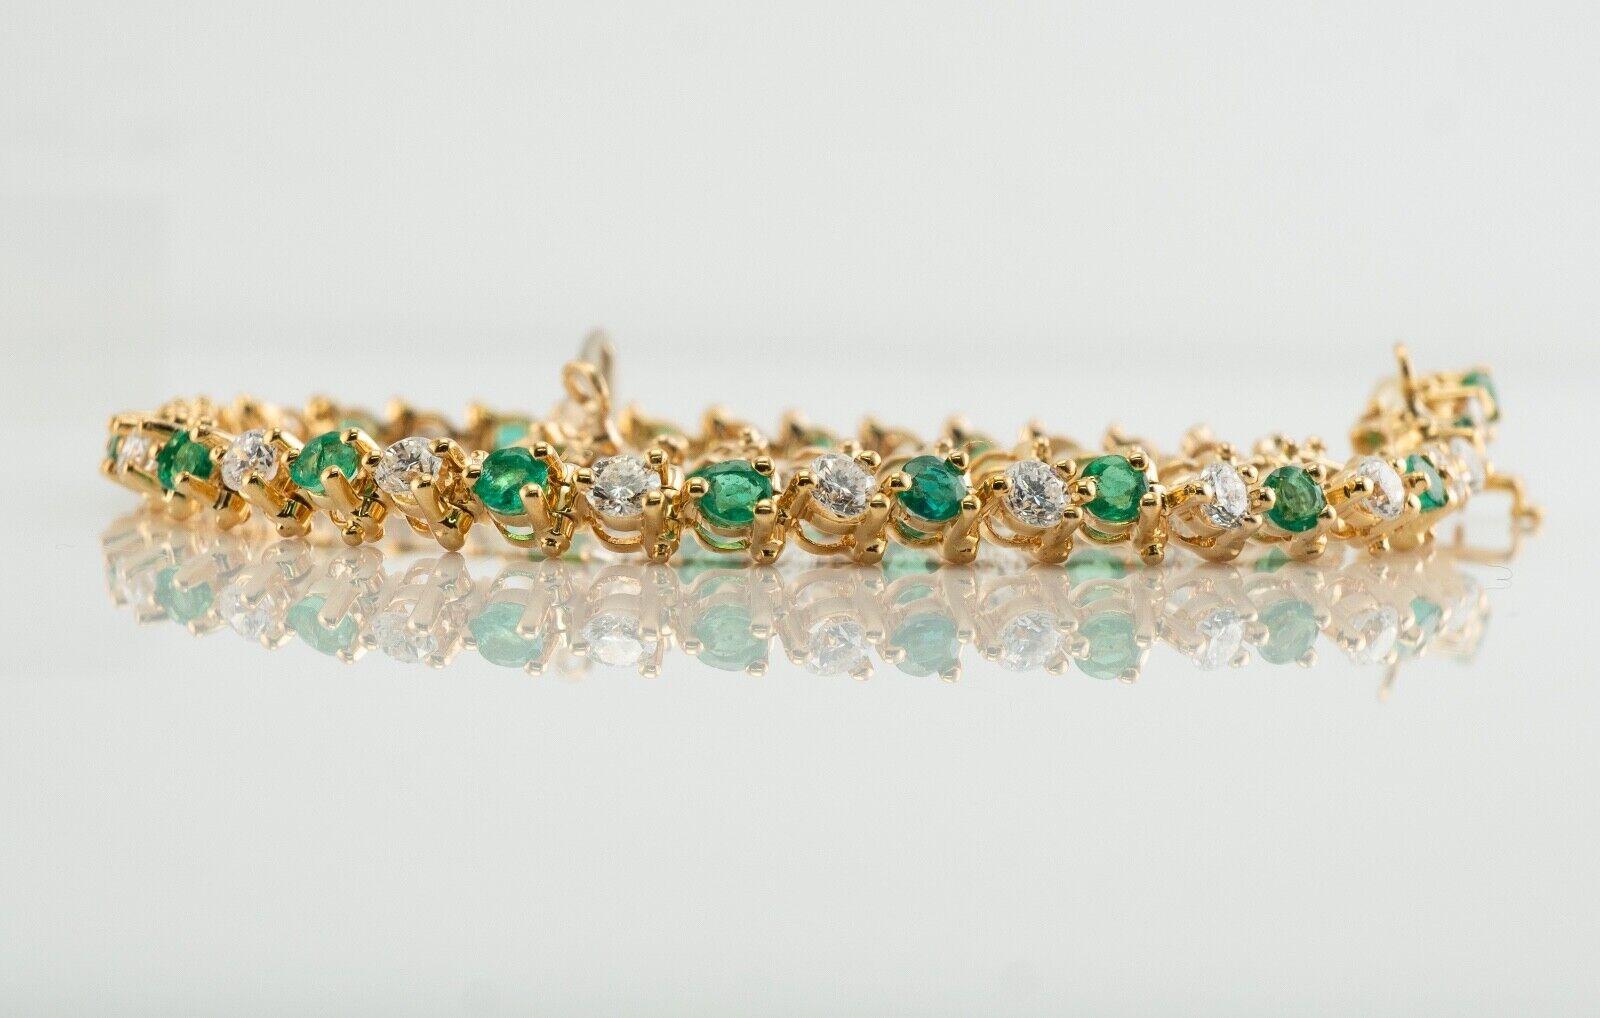 Dieses wunderschöne Armband ist aus massivem 14-karätigem Gelbgold gefertigt und mit Smaragden und echten Diamanten besetzt, die in der Erde abgebaut wurden. Sechsundzwanzig 2 mm große Smaragde von insgesamt 1,04 Karat. Diese Edelsteine sind sehr